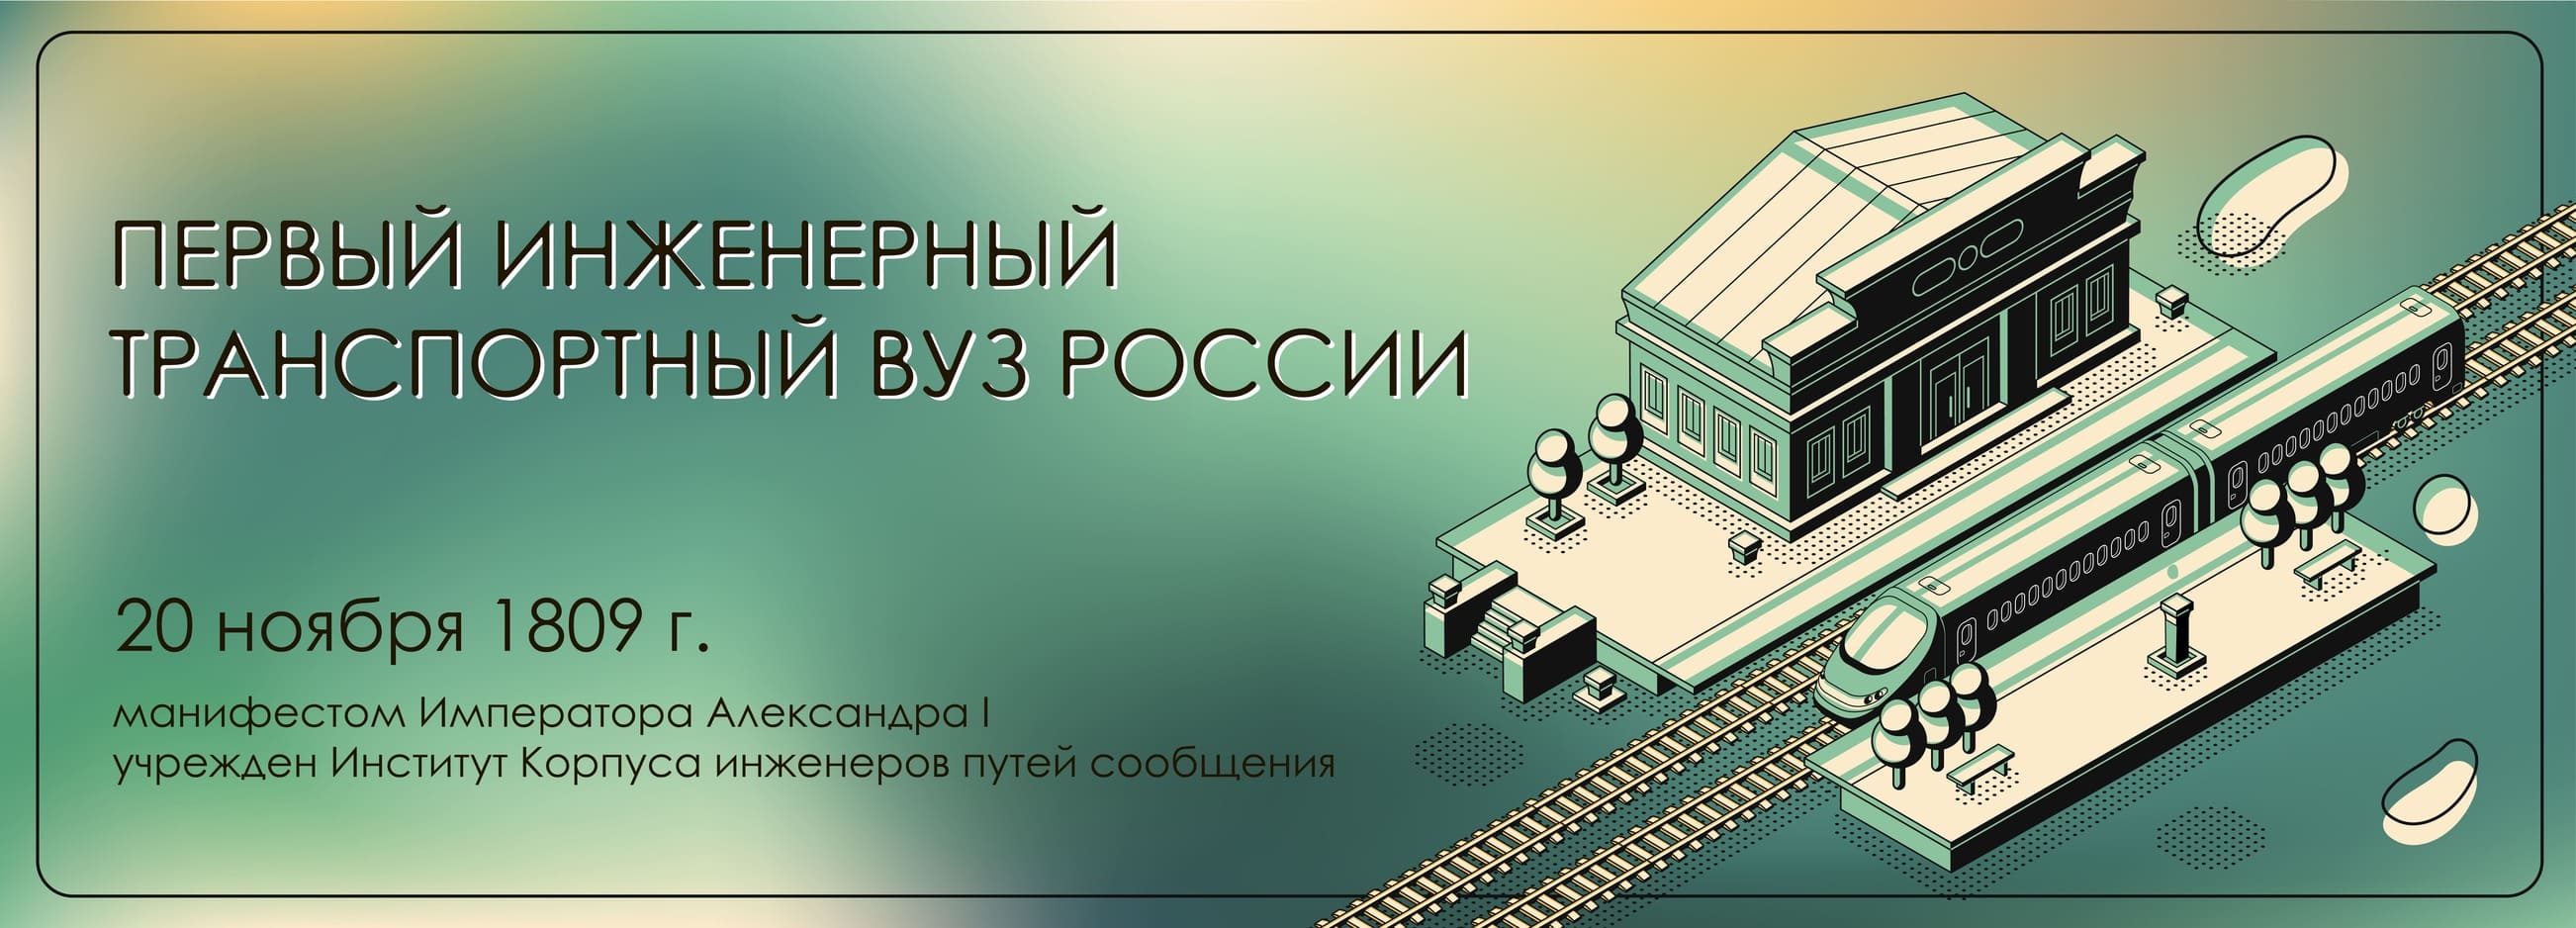 Первый инженерный транспортный вуз России